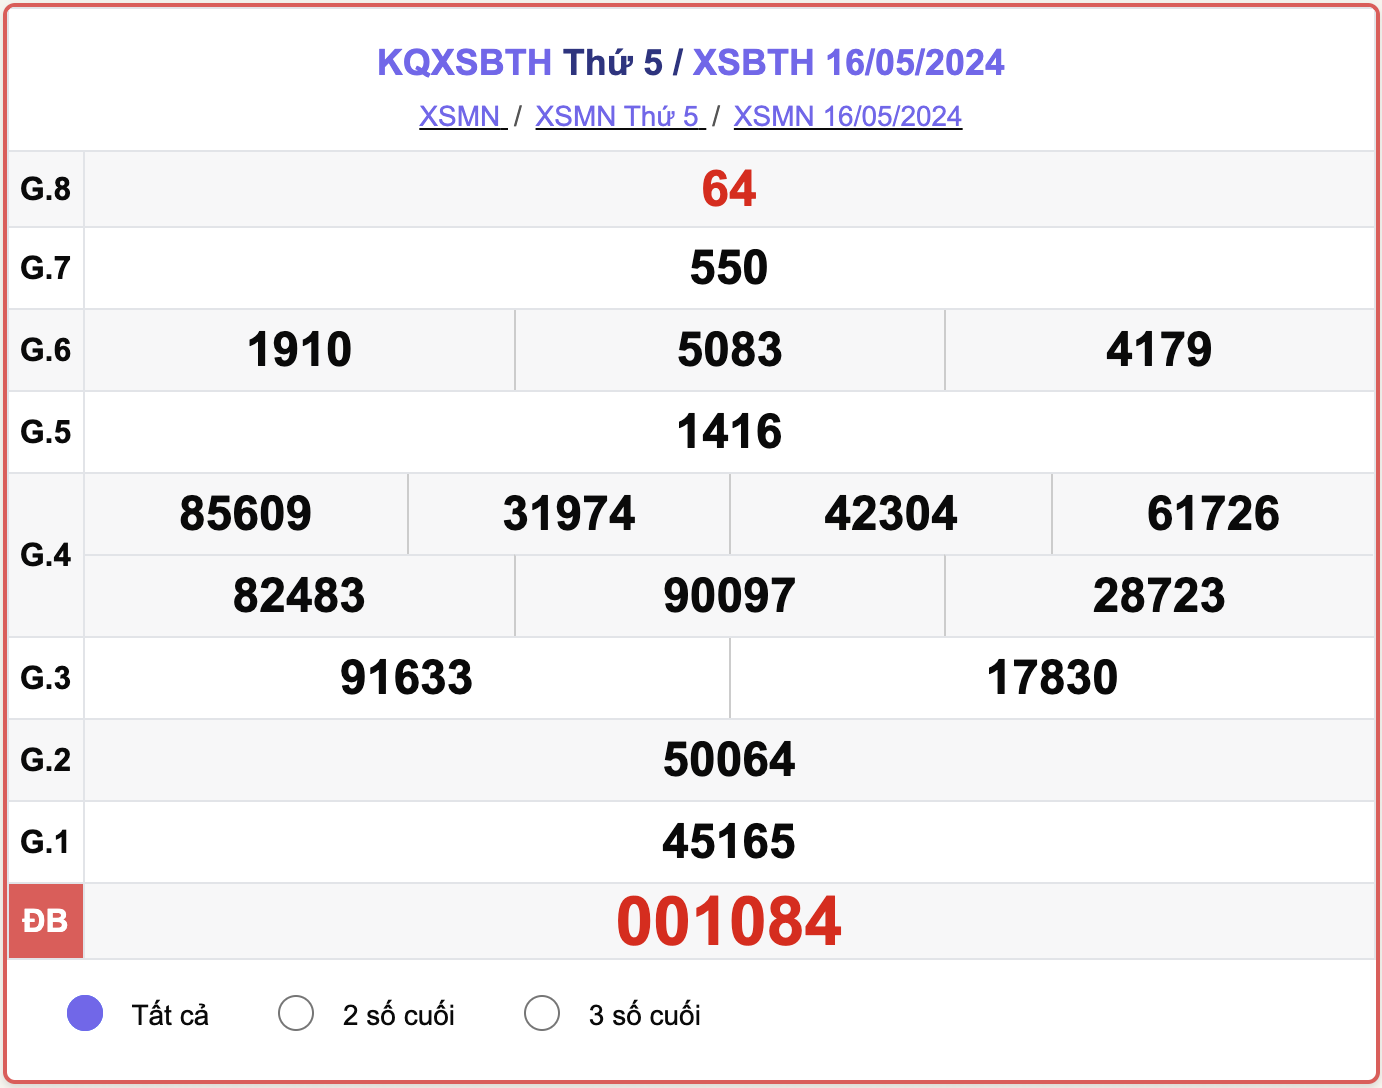 XSBTH 16/5, kết quả xổ số Bình Thuận ngày 16/5/2024.